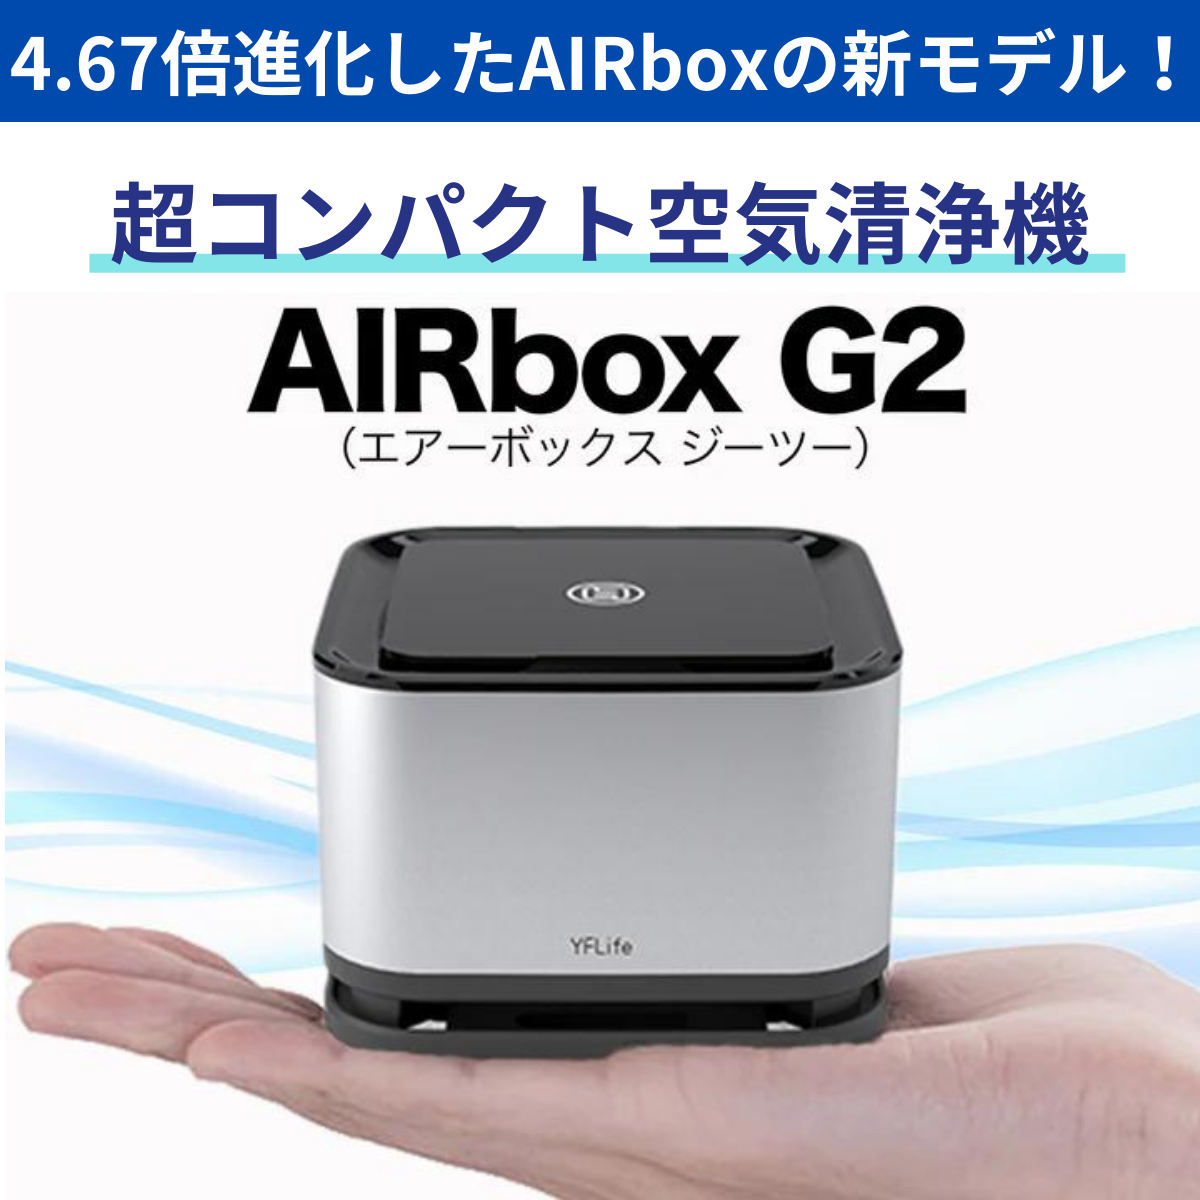 空気清浄機 小型 フィルター交換なし 光触媒 AIRbox G2 ウイルス除去